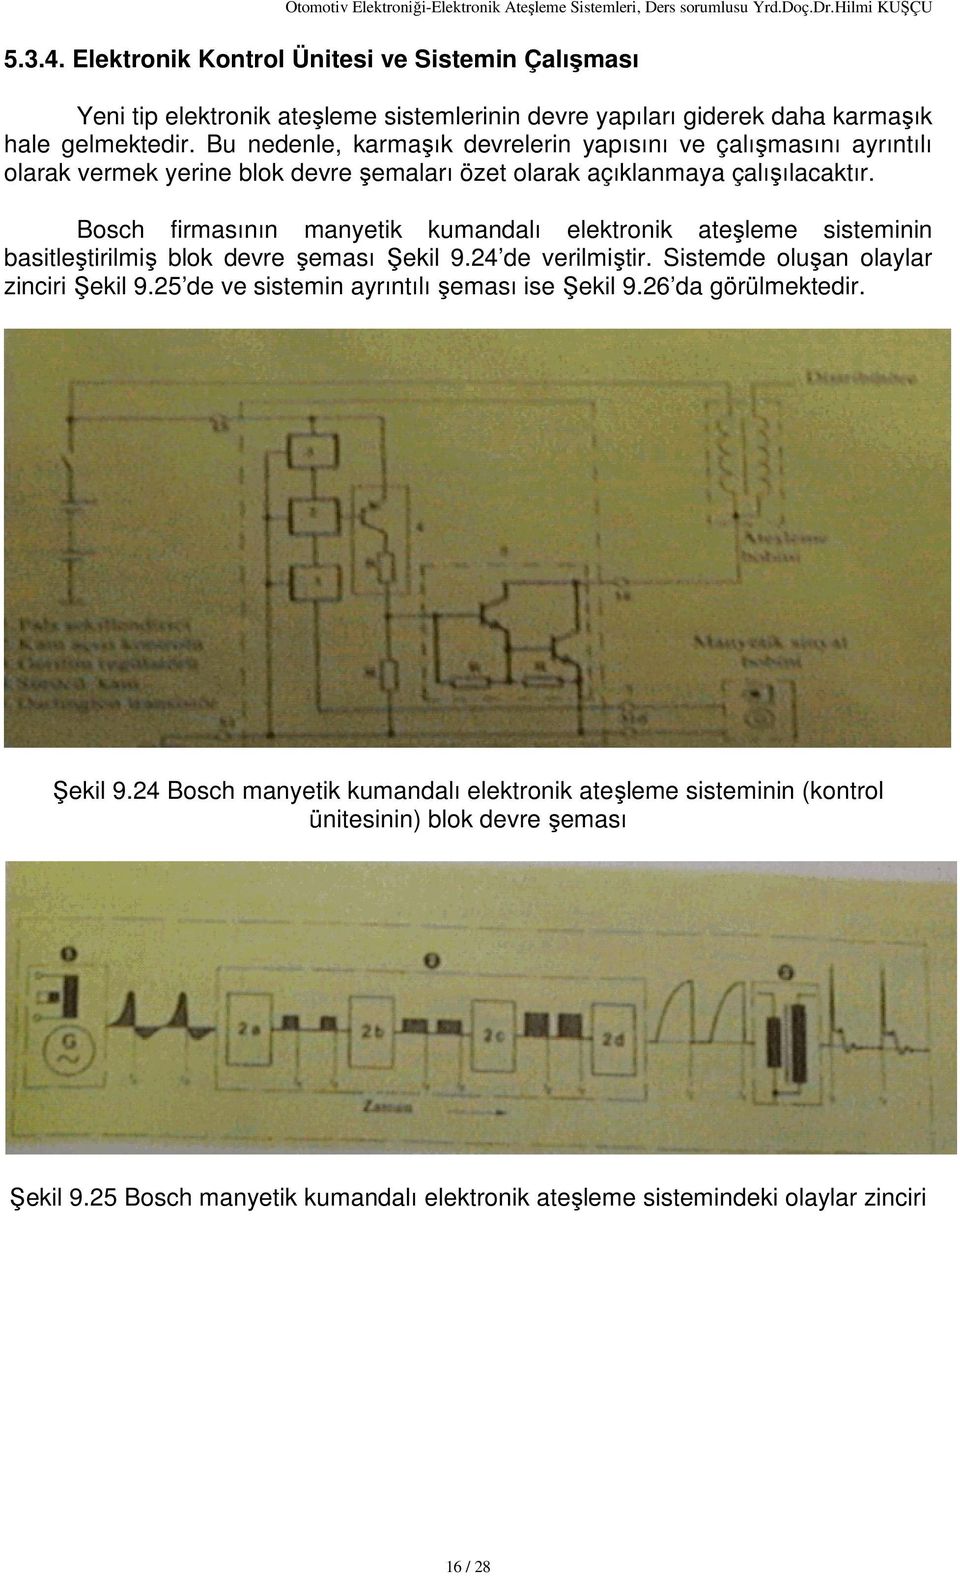 Bosch firmasının manyetik kumandalı elektronik ateşleme sisteminin basitleştirilmiş blok devre şeması Şekil 9.24 de verilmiştir. Sistemde oluşan olaylar zinciri Şekil 9.